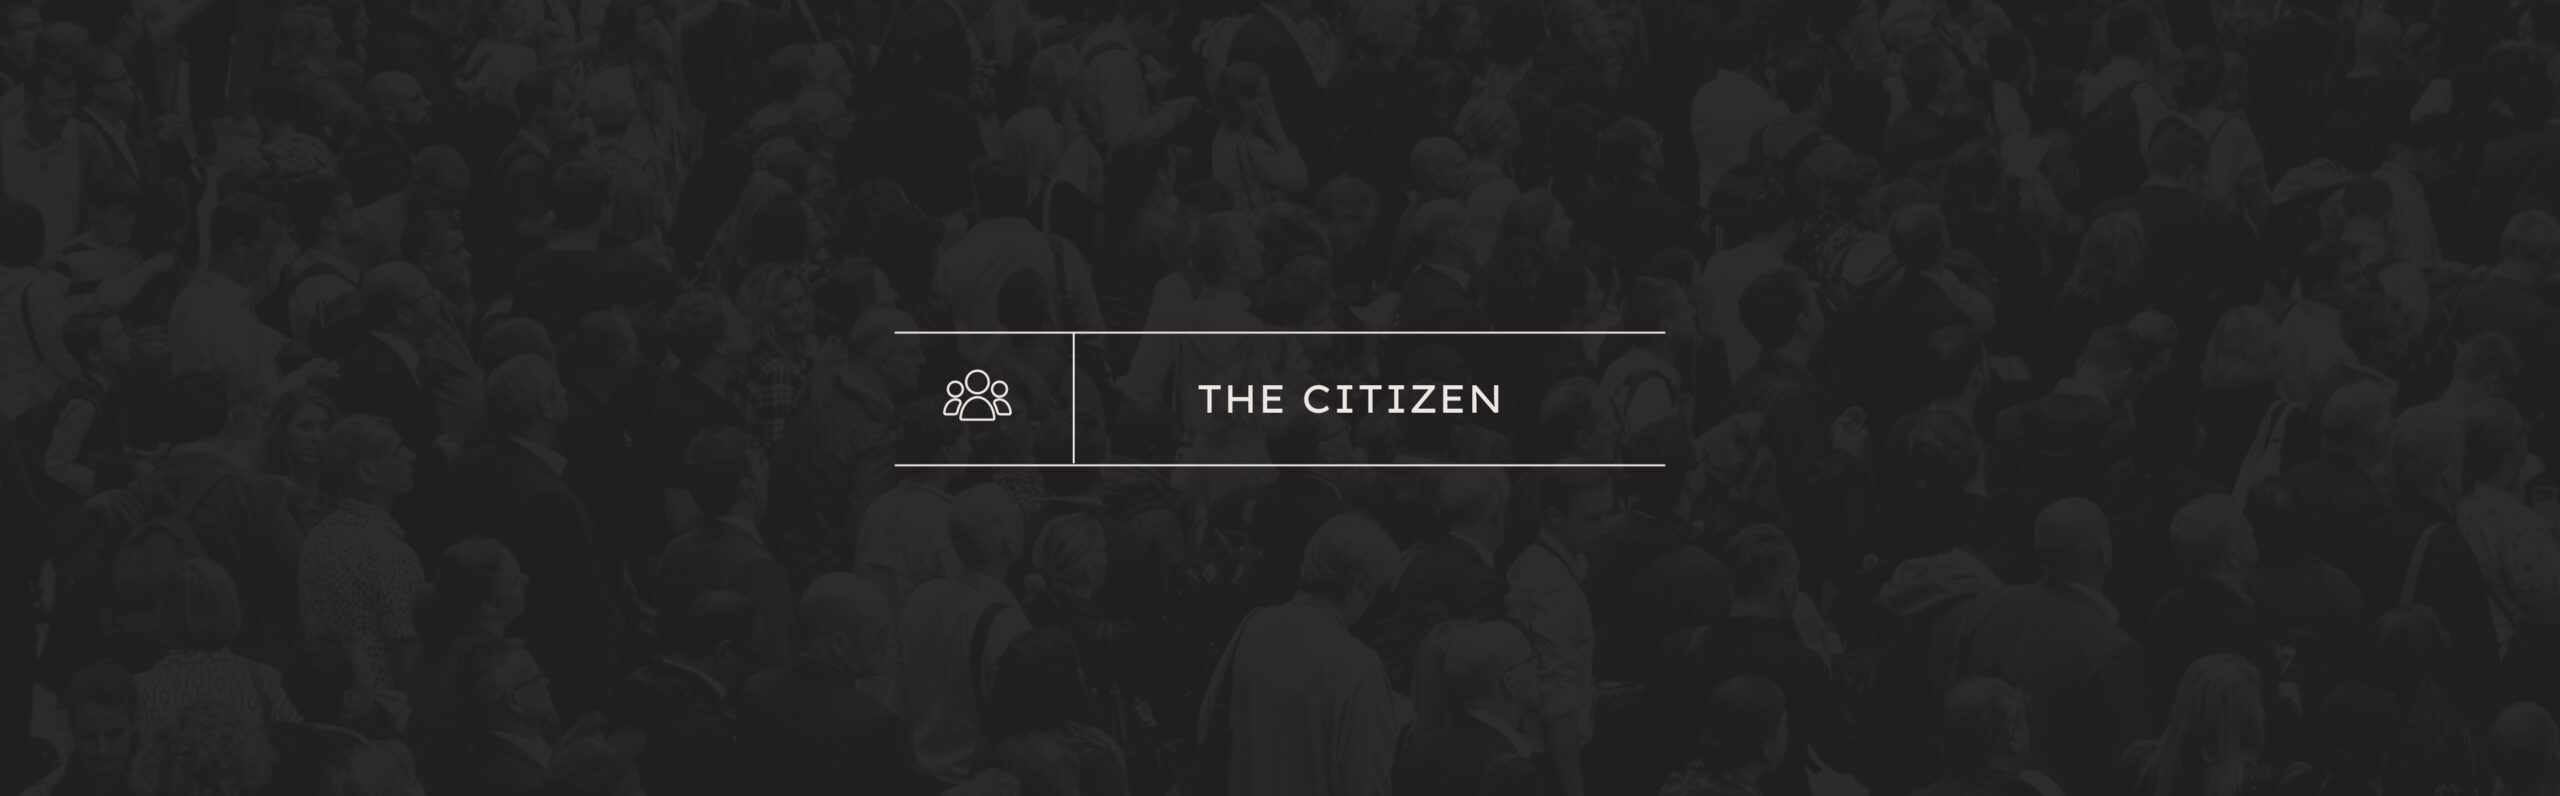 Brand Archetypes: The Citizen